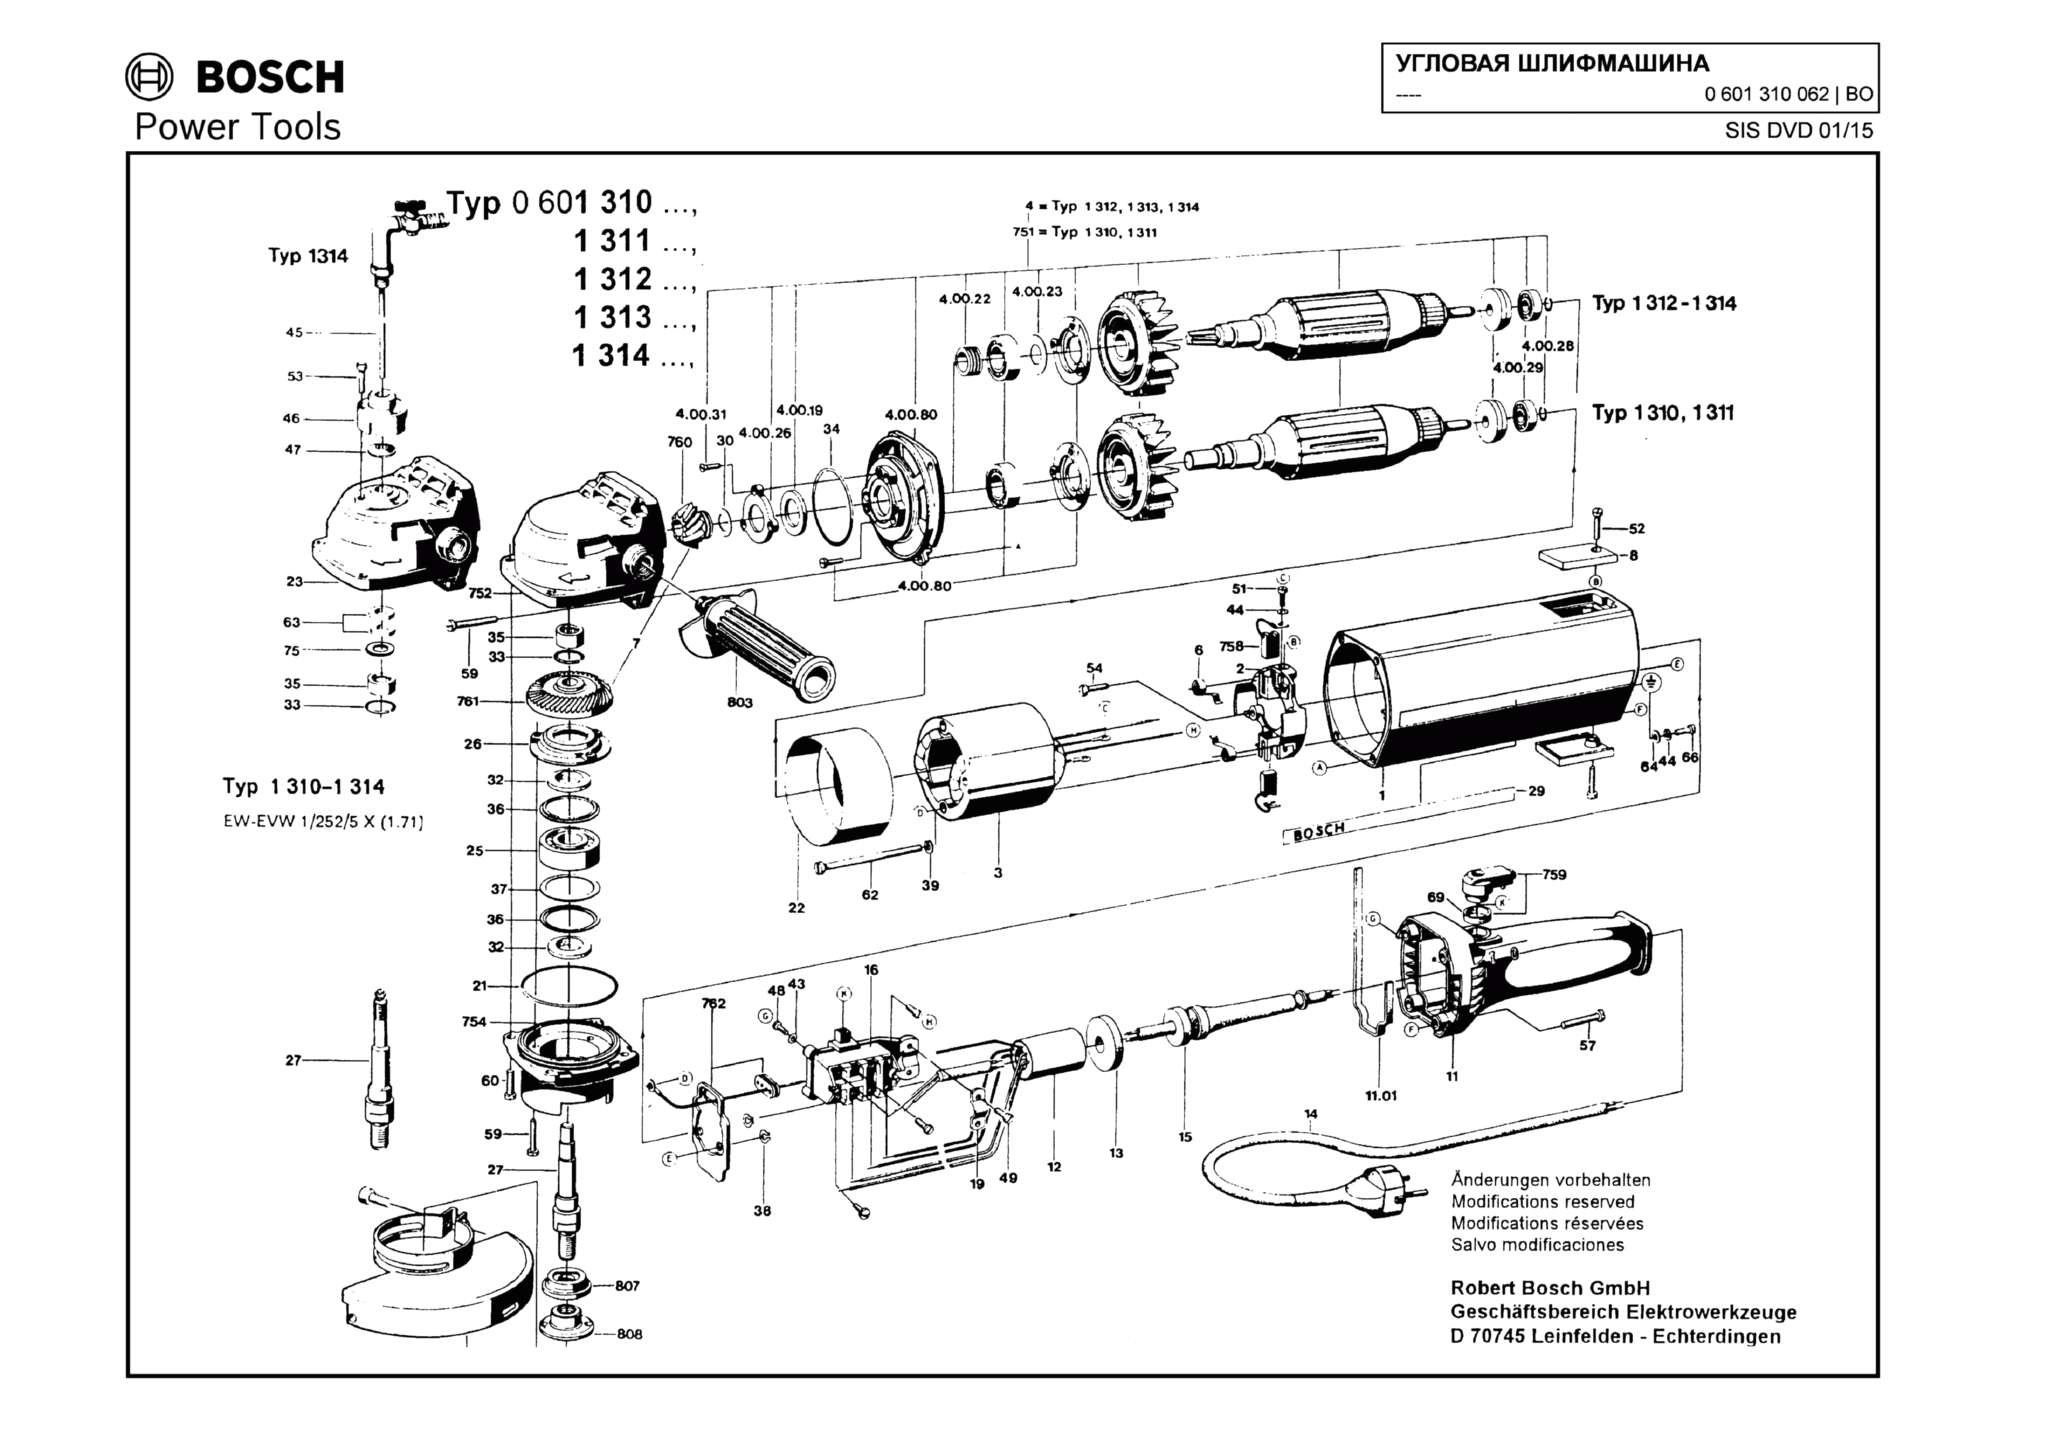 Запчасти, схема и деталировка Bosch (ТИП 0601310062)